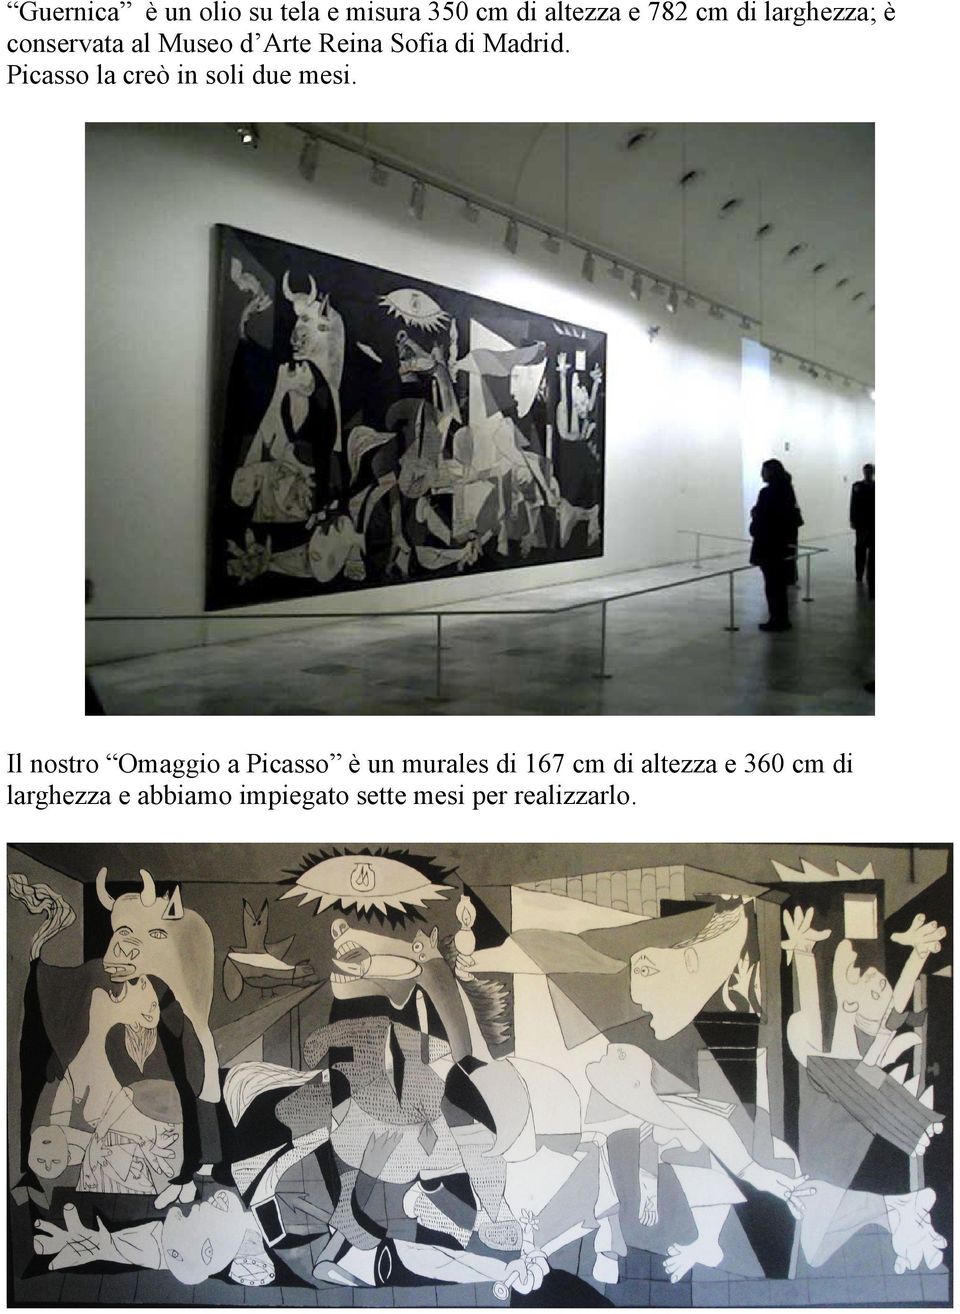 Picasso la creò in soli due mesi.